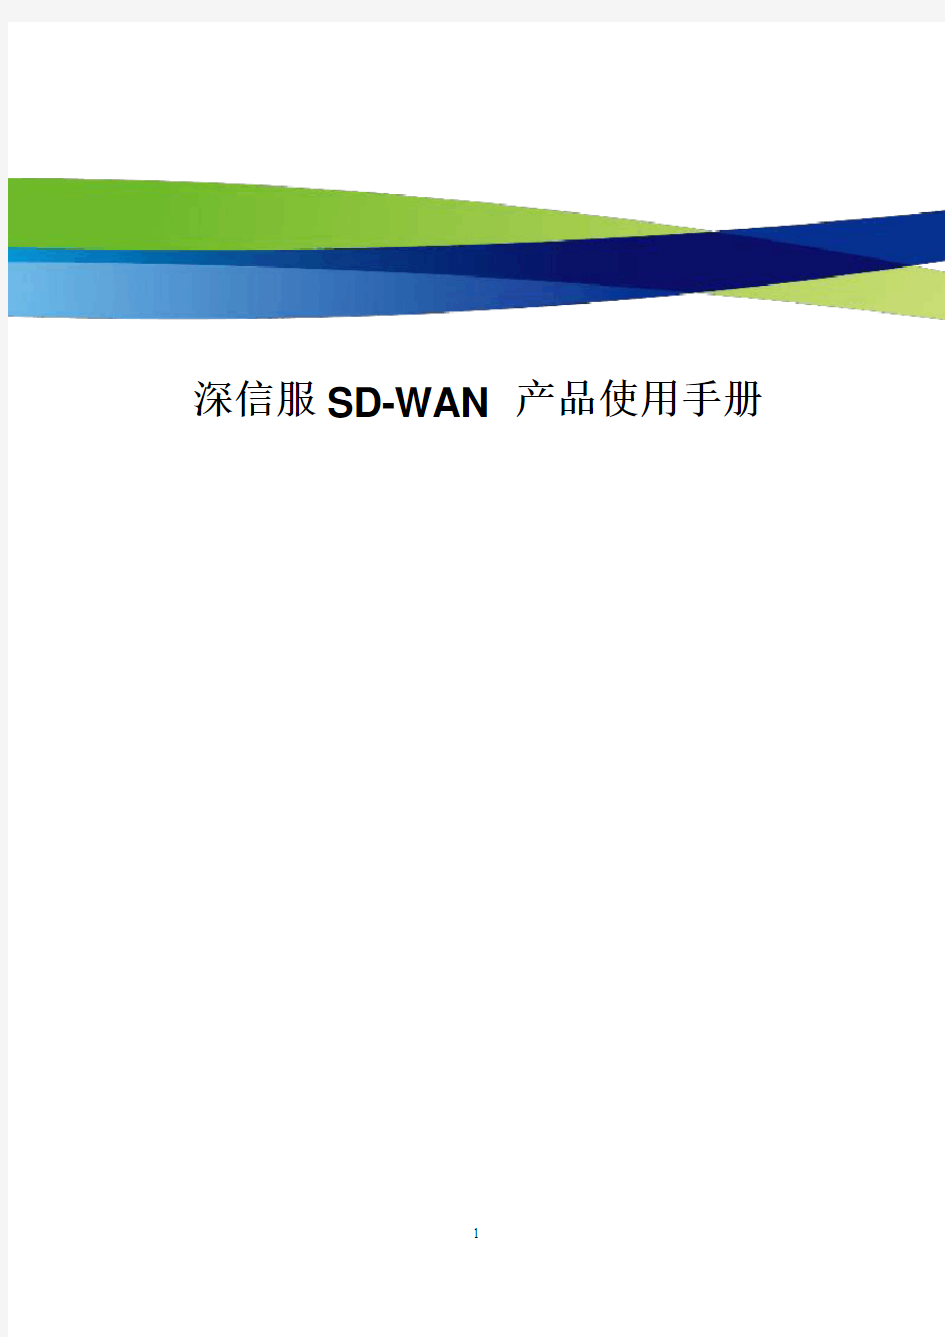 深信服SD-WAN产品使用说明书